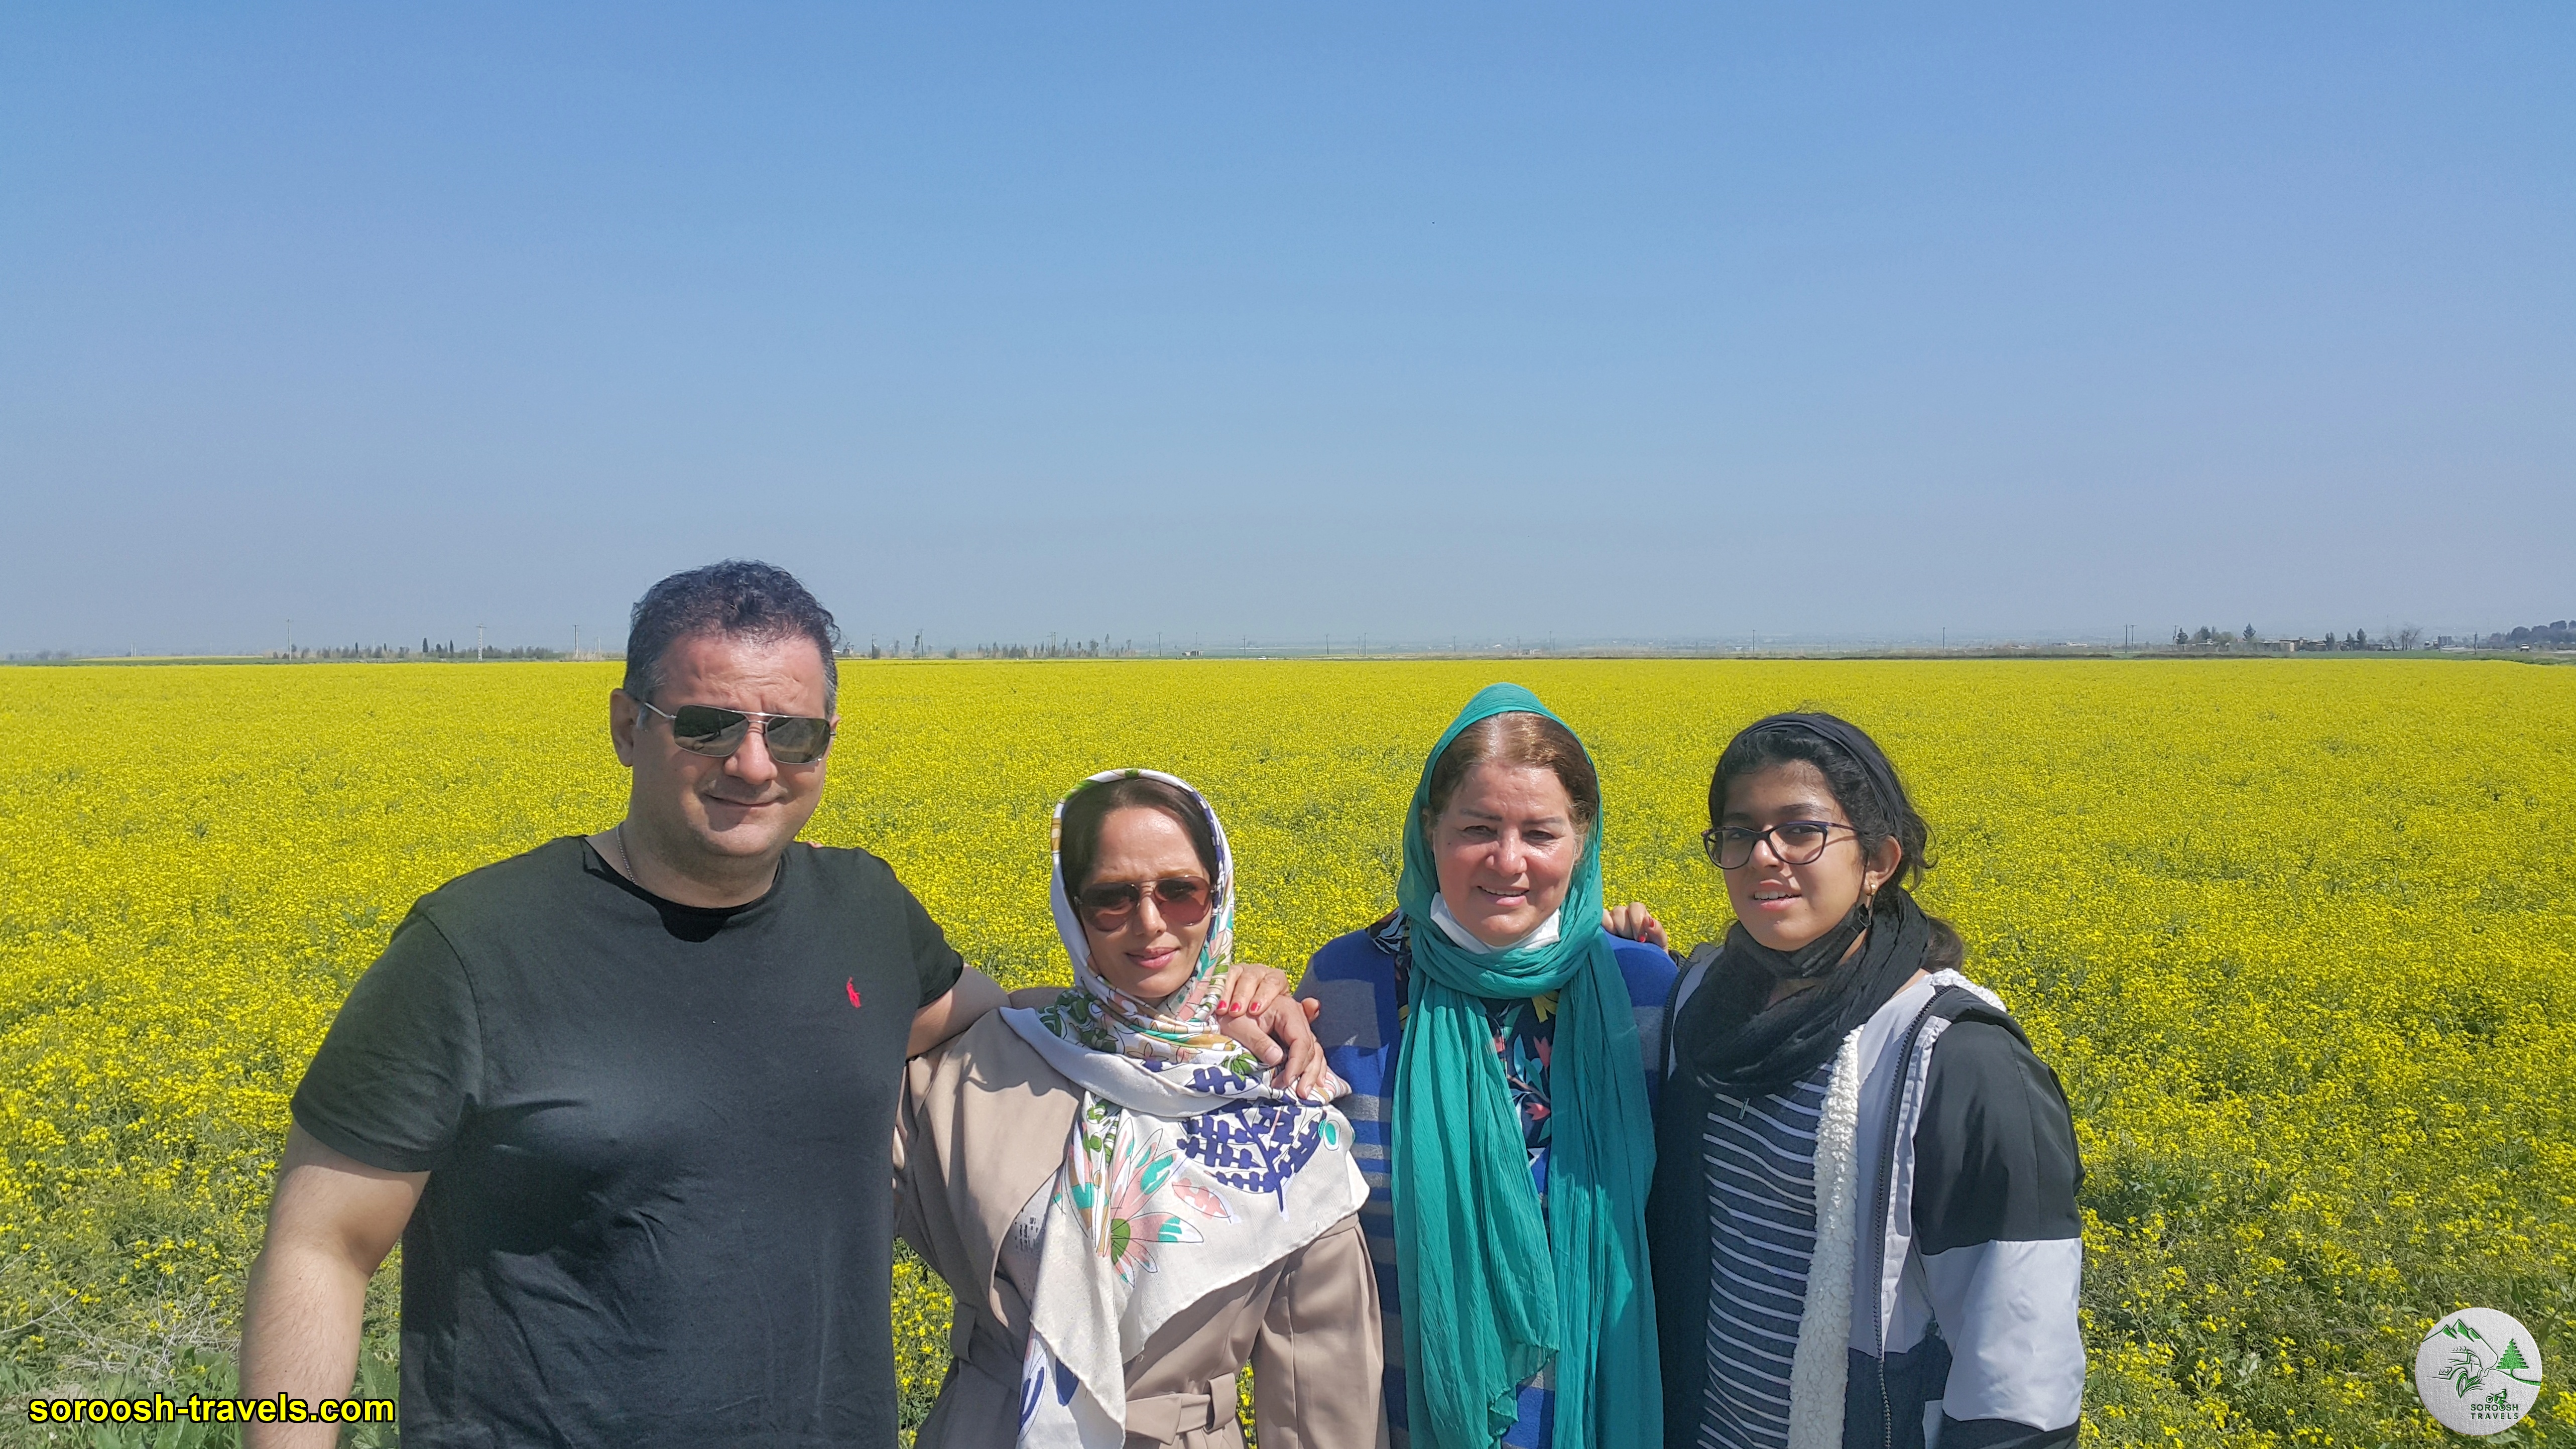 مزارع سرسبز در شمال ایران - نوروز 1400